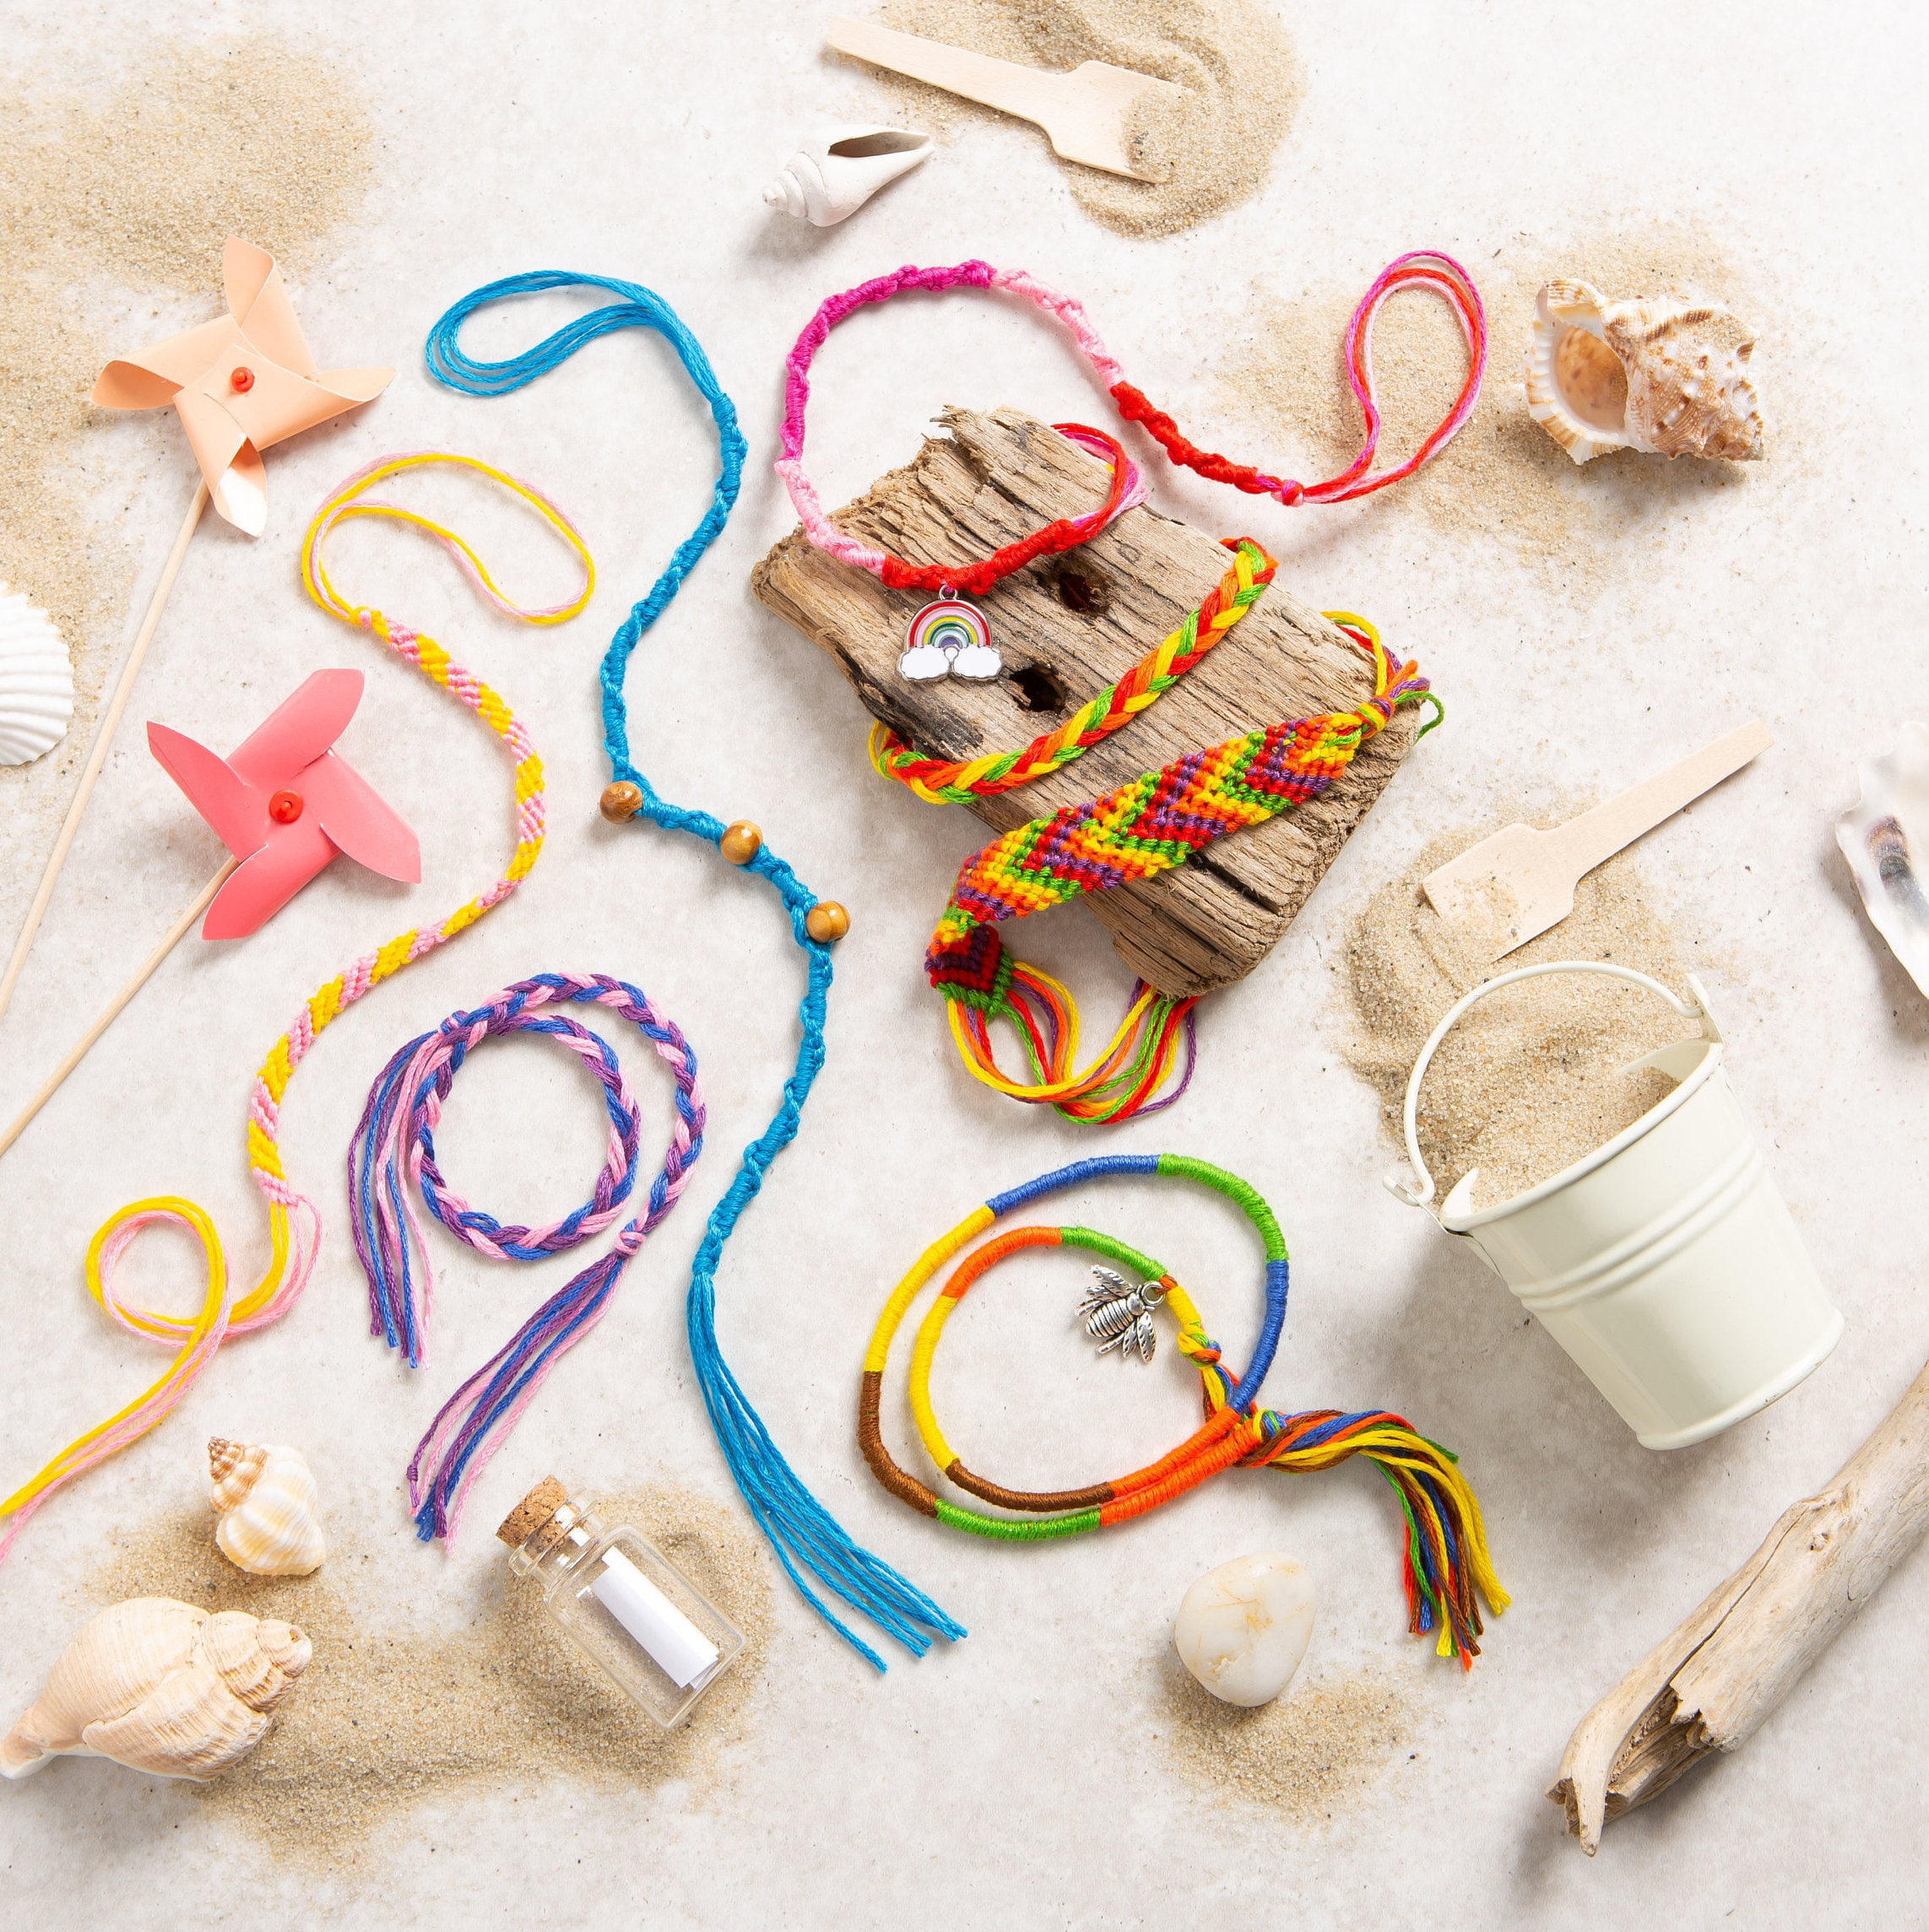 Friendship Bracelets Maker Making Kit, Arts and Crafts for Kids